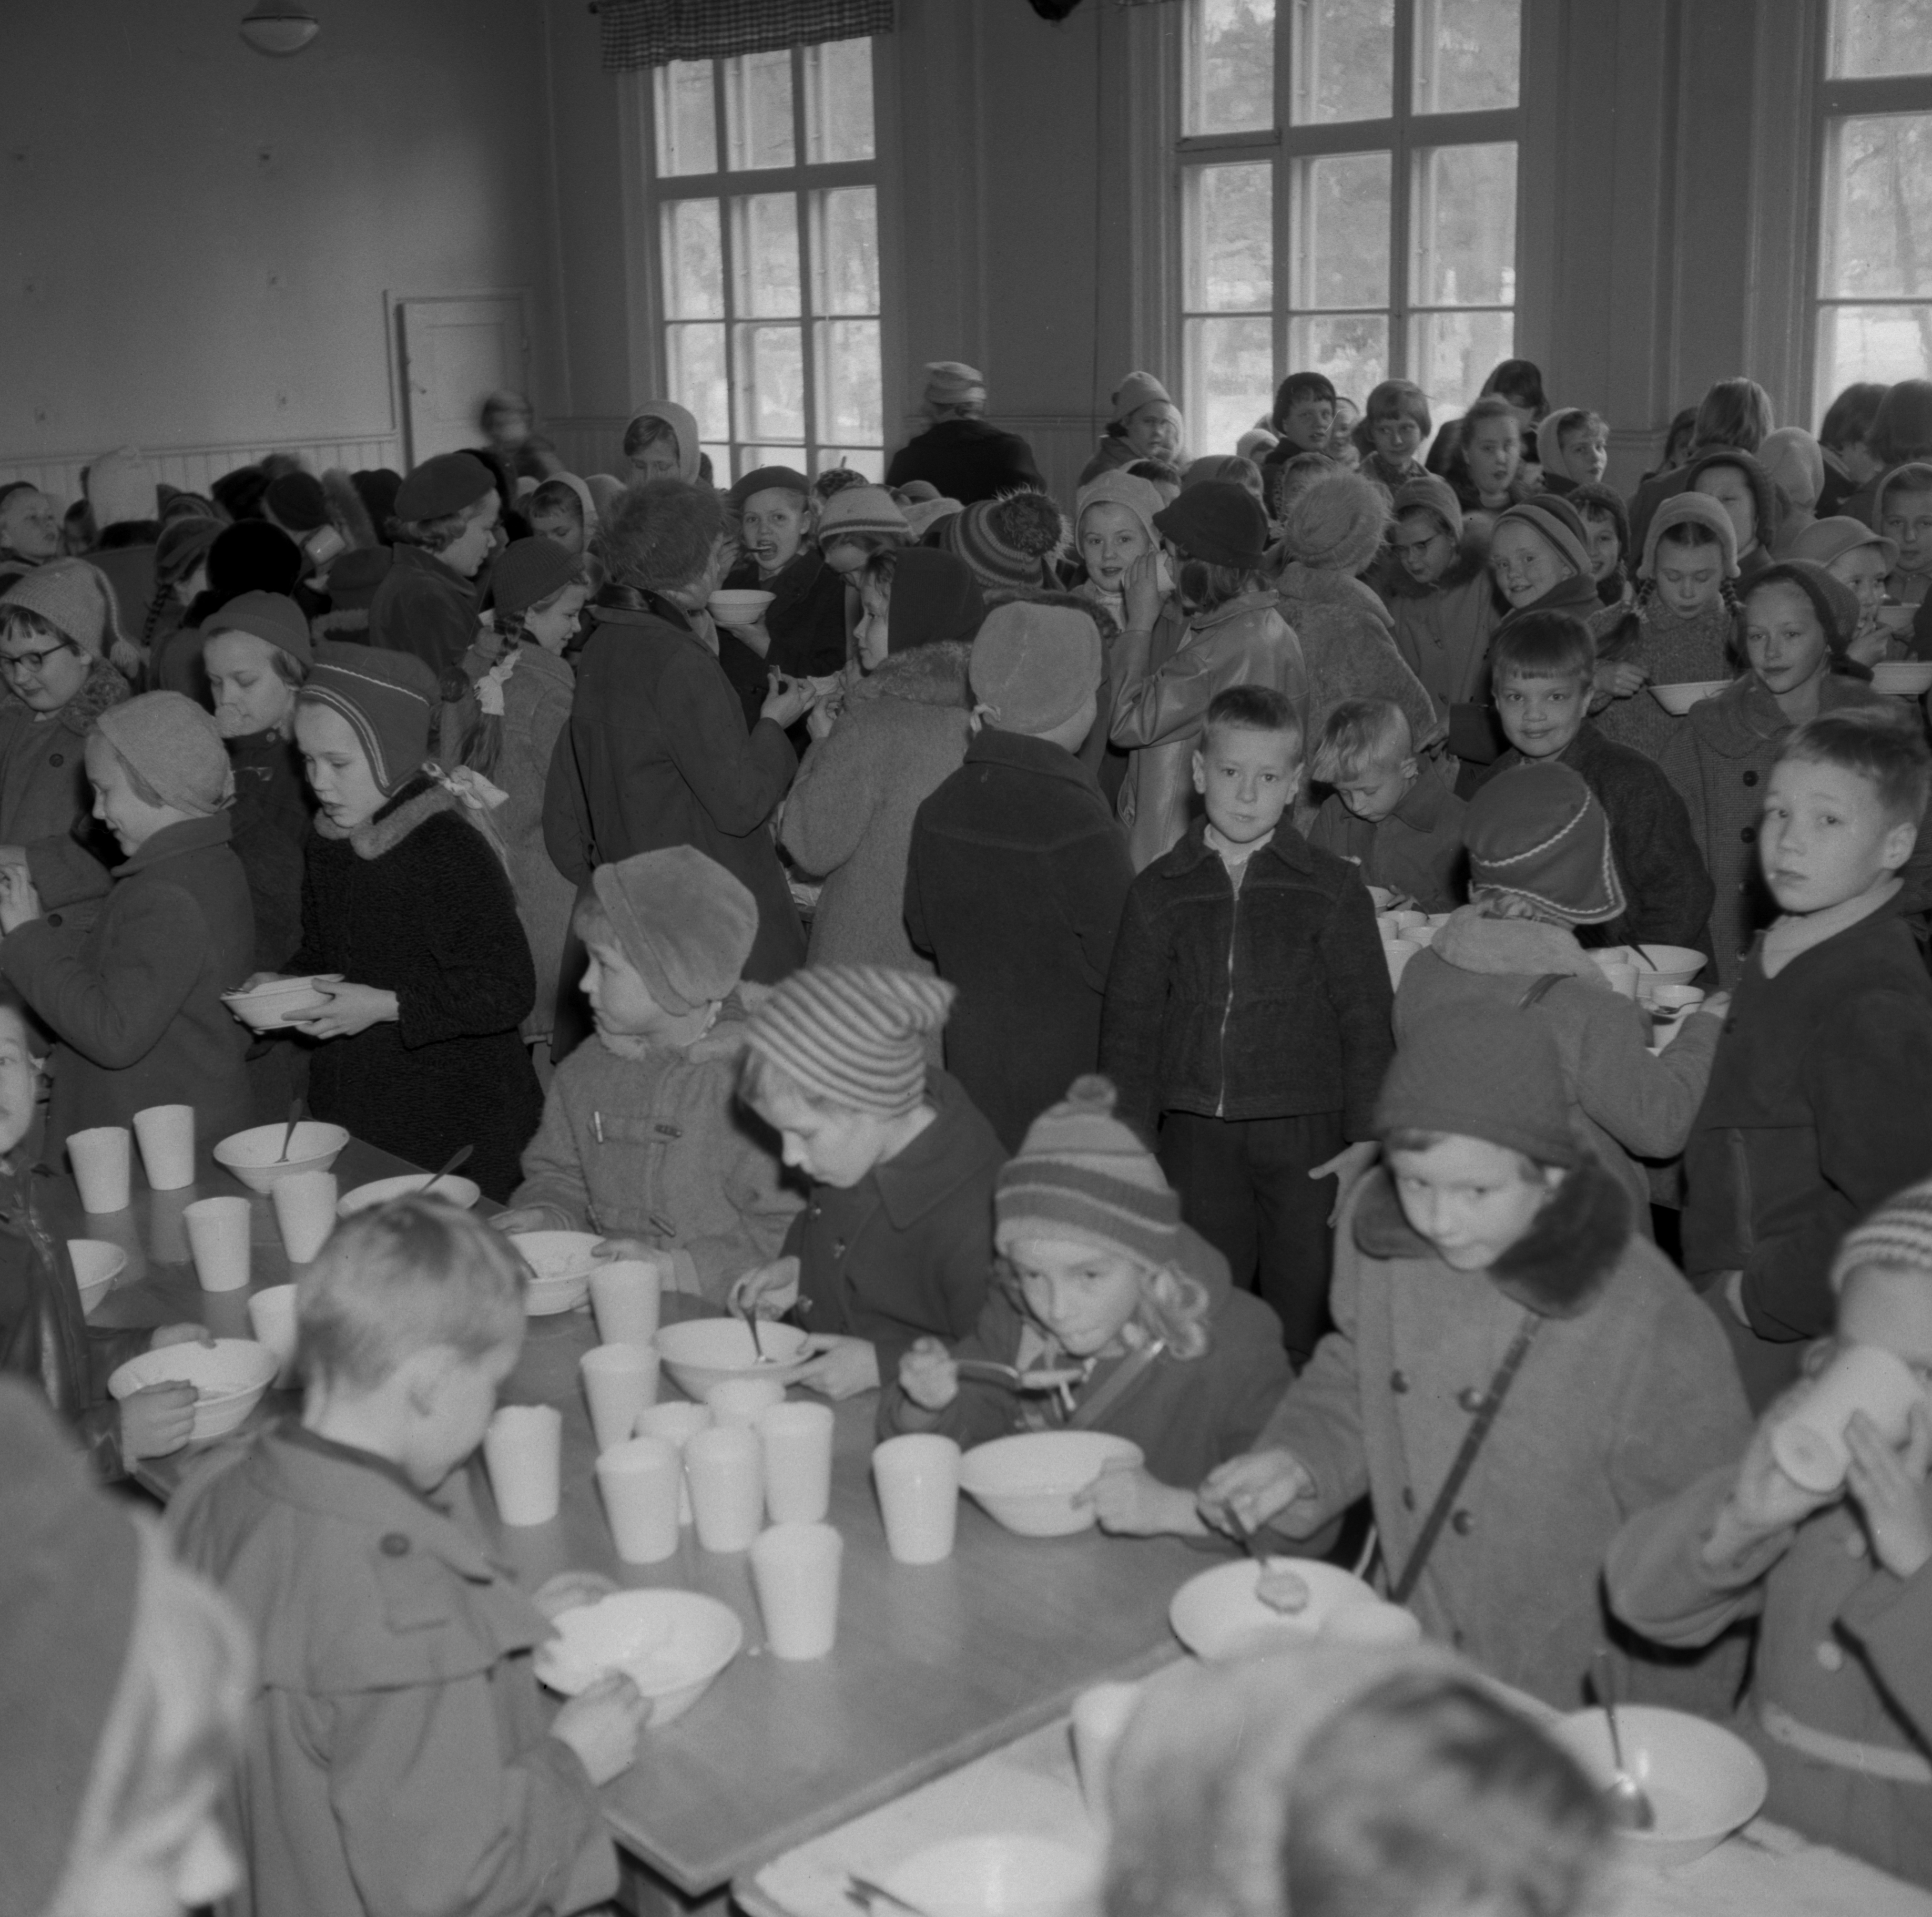 aleksanterin kansakoulun ruokala 1950 luvulla kuva ensio kauppila vapriikin kuva arkisto jpg